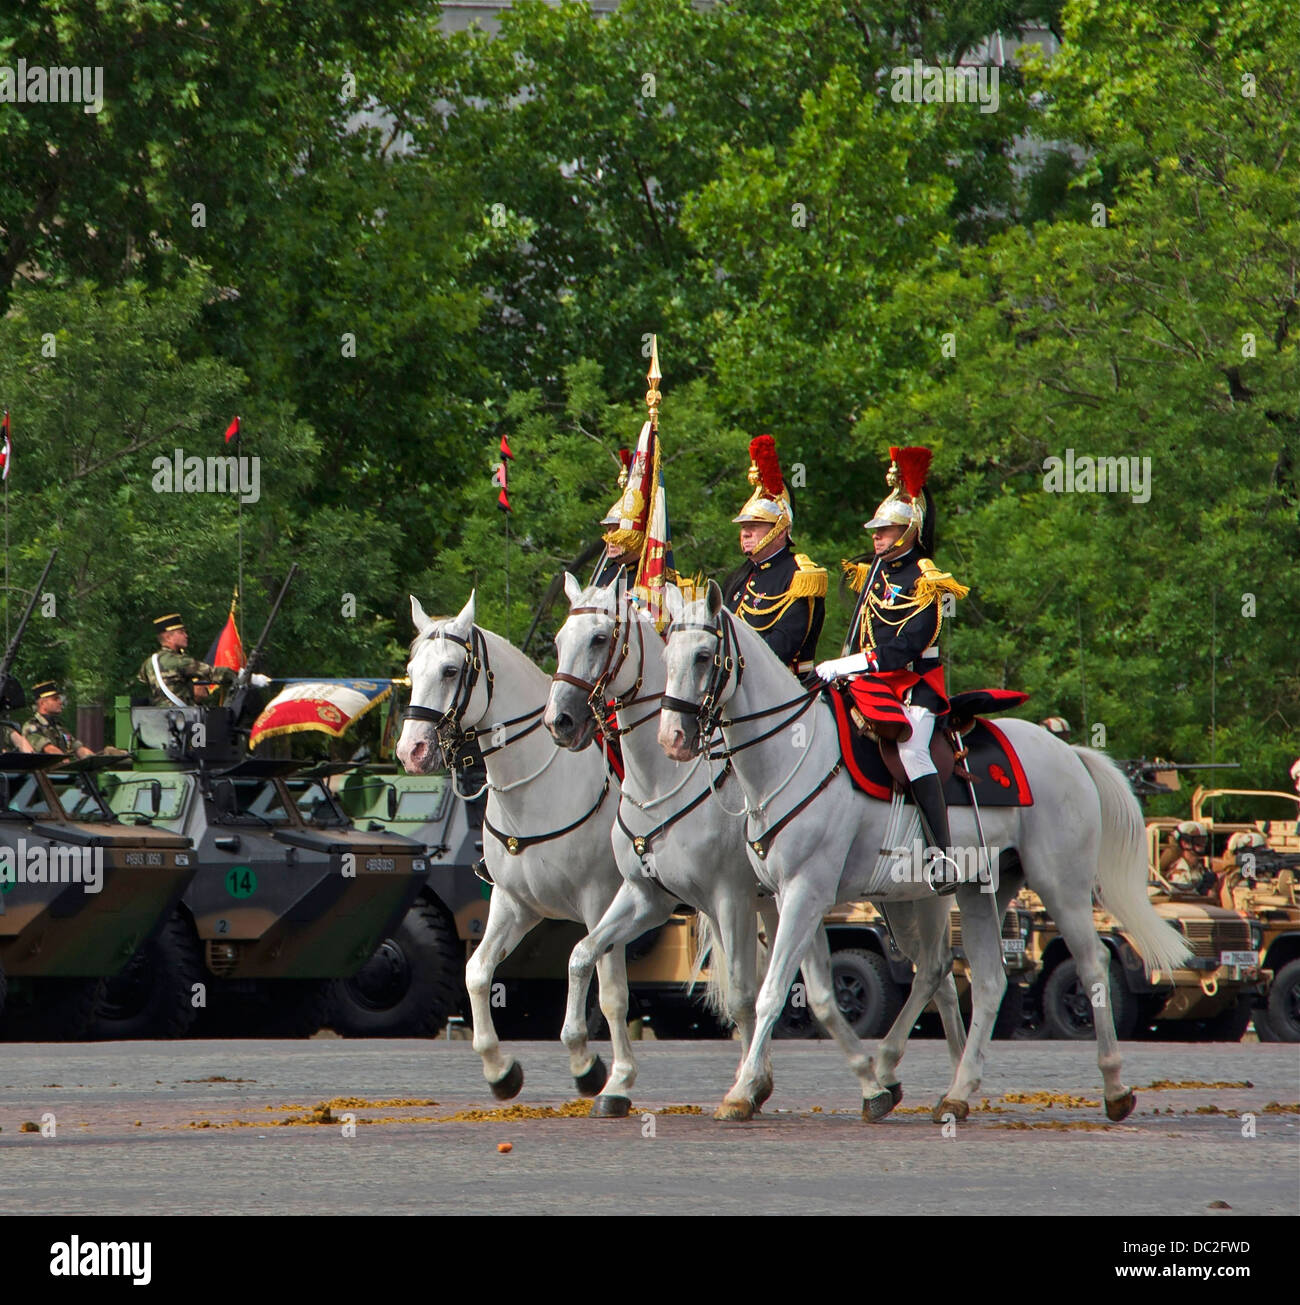 La Garde côtière canadienne de la norme du régiment de cavalerie de la Garde républicaine, le 14 juillet 2012 Défilé militaire, Charles-de-Gaulle, Paris Banque D'Images